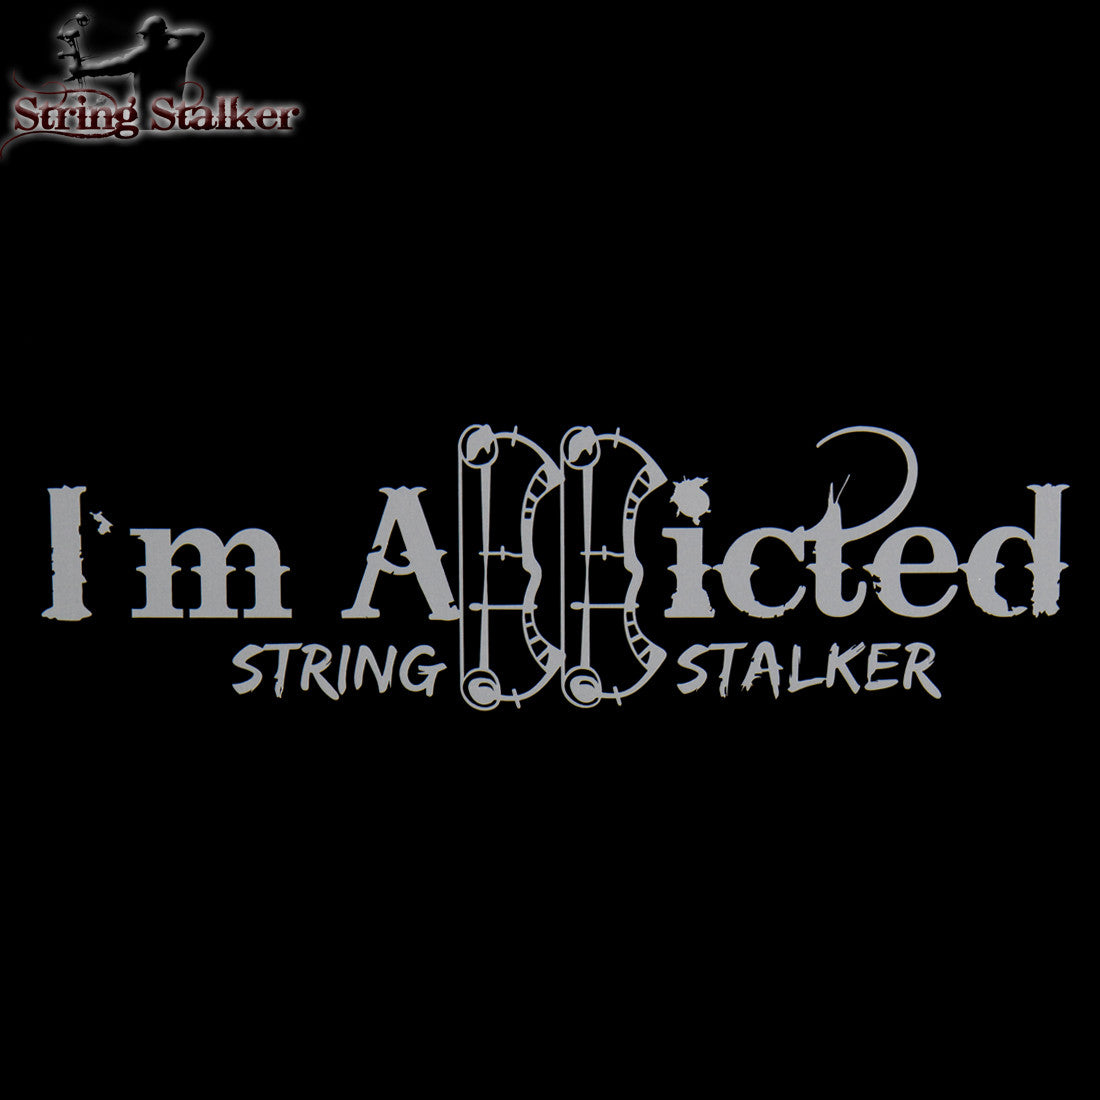 String Stalker Bow Hunting Decal 3 Pack - String Stalker